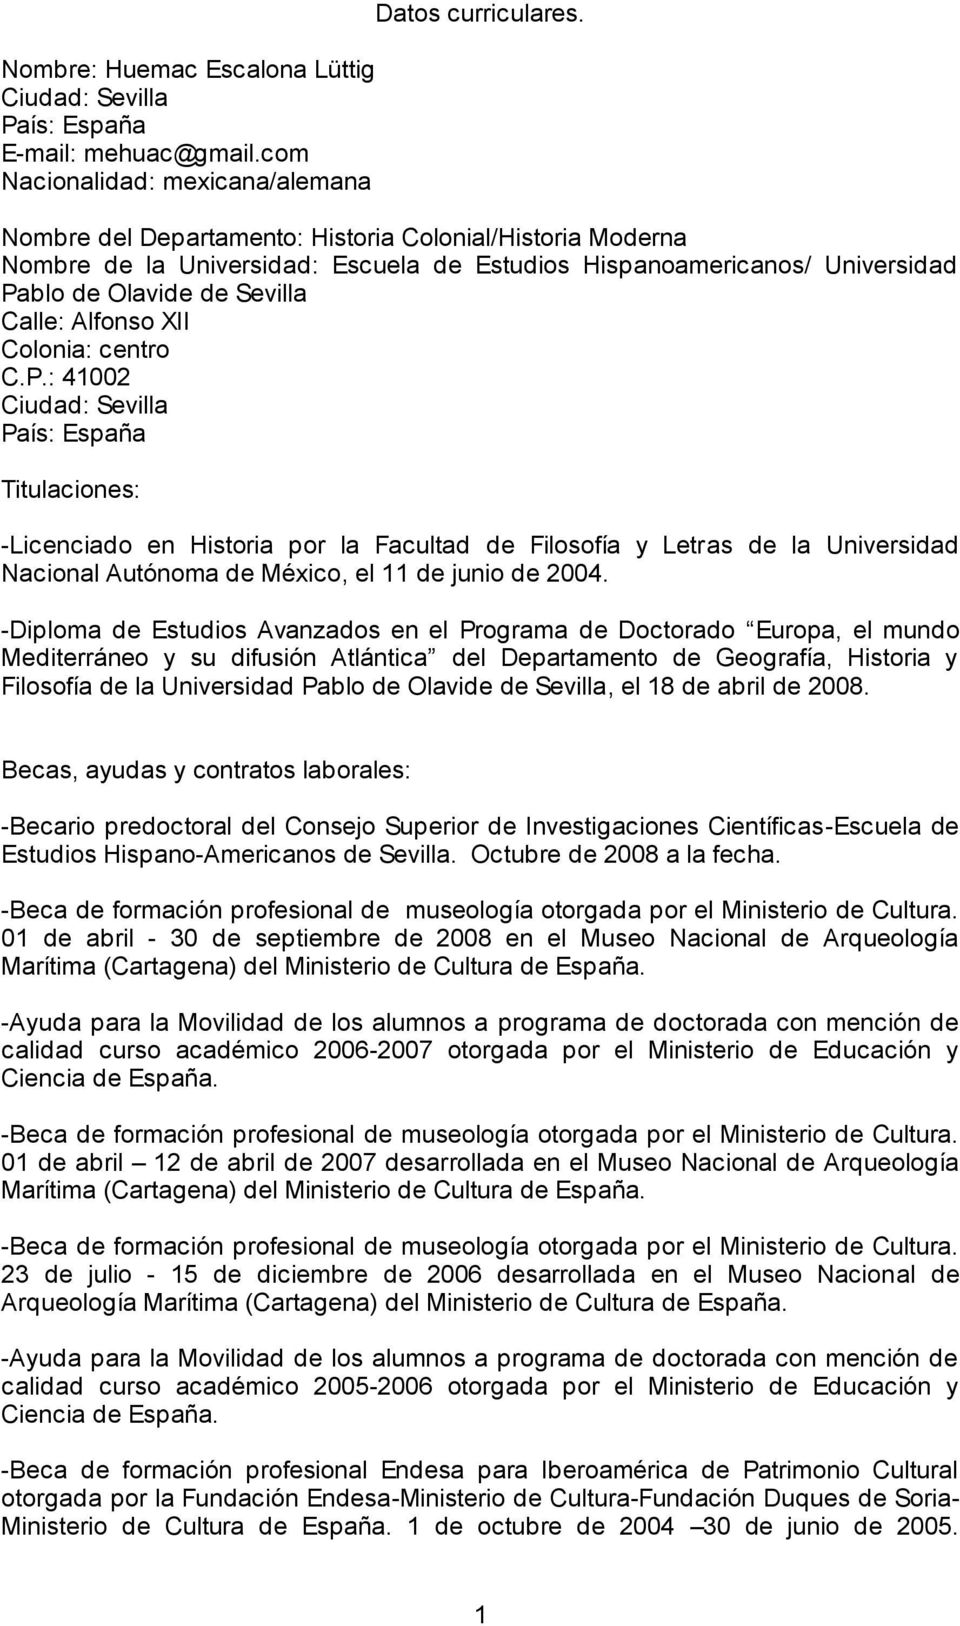 C.P.: 41002 Ciudad: Sevilla País: España Titulaciones: -Licenciado en Historia por la Facultad de Filosofía y Letras de la Universidad Nacional Autónoma de México, el 11 de junio de 2004.